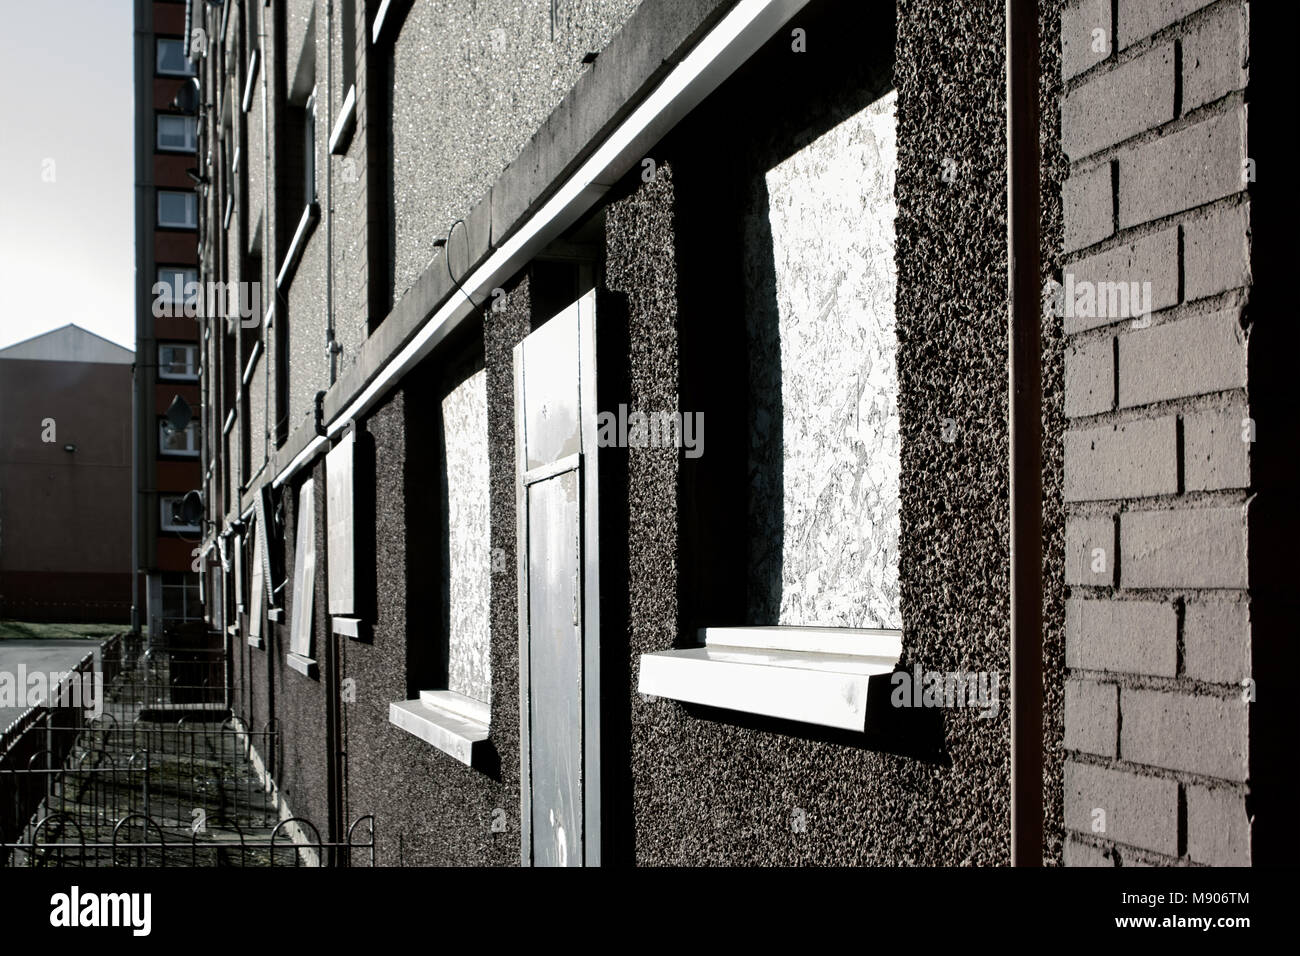 Vides et délabrés, principalement le logement dans une région défavorisée, illustrant la pauvreté, Yoker, Glasgow, Écosse (mars 2018) Banque D'Images